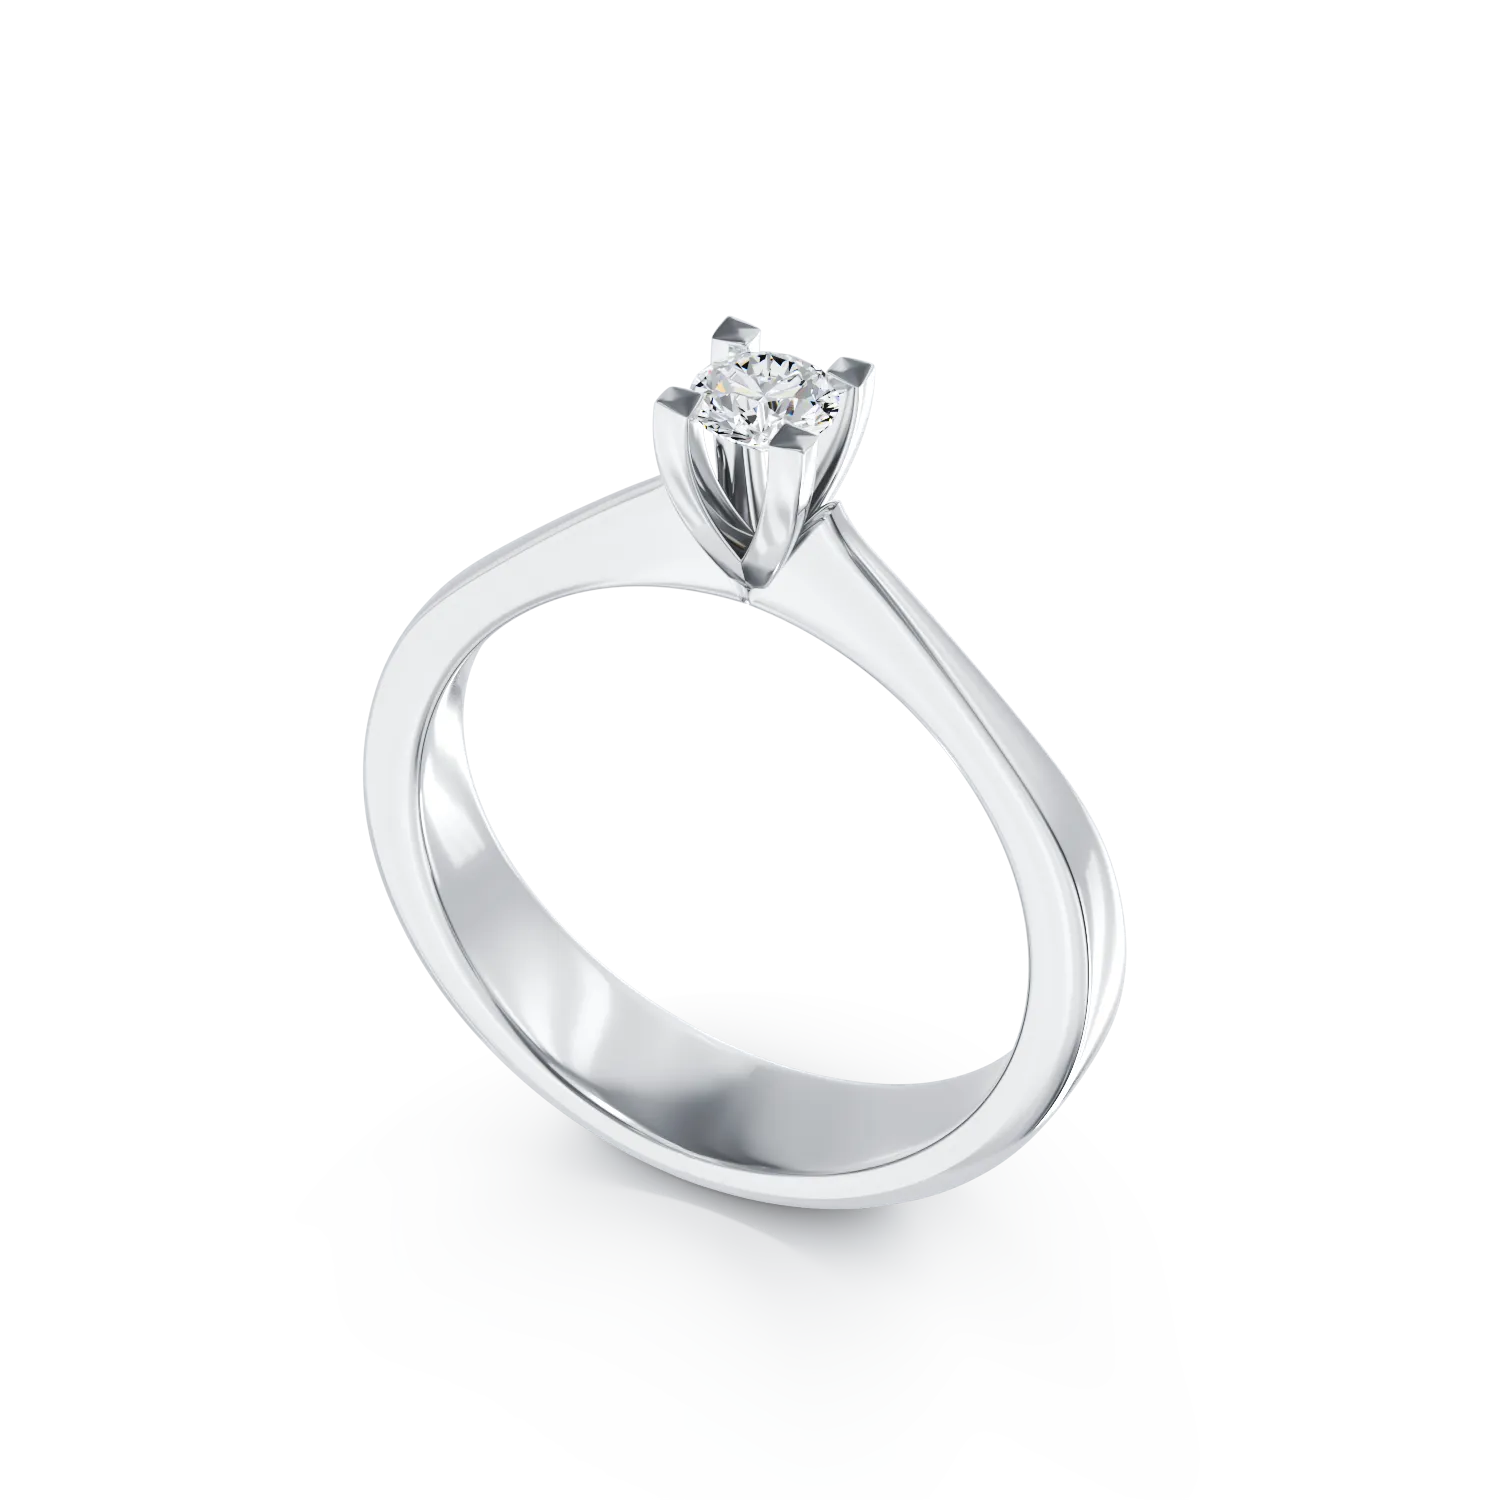 Годежен пръстен от 18K бяло злато с диамант пасианс 0.3ct